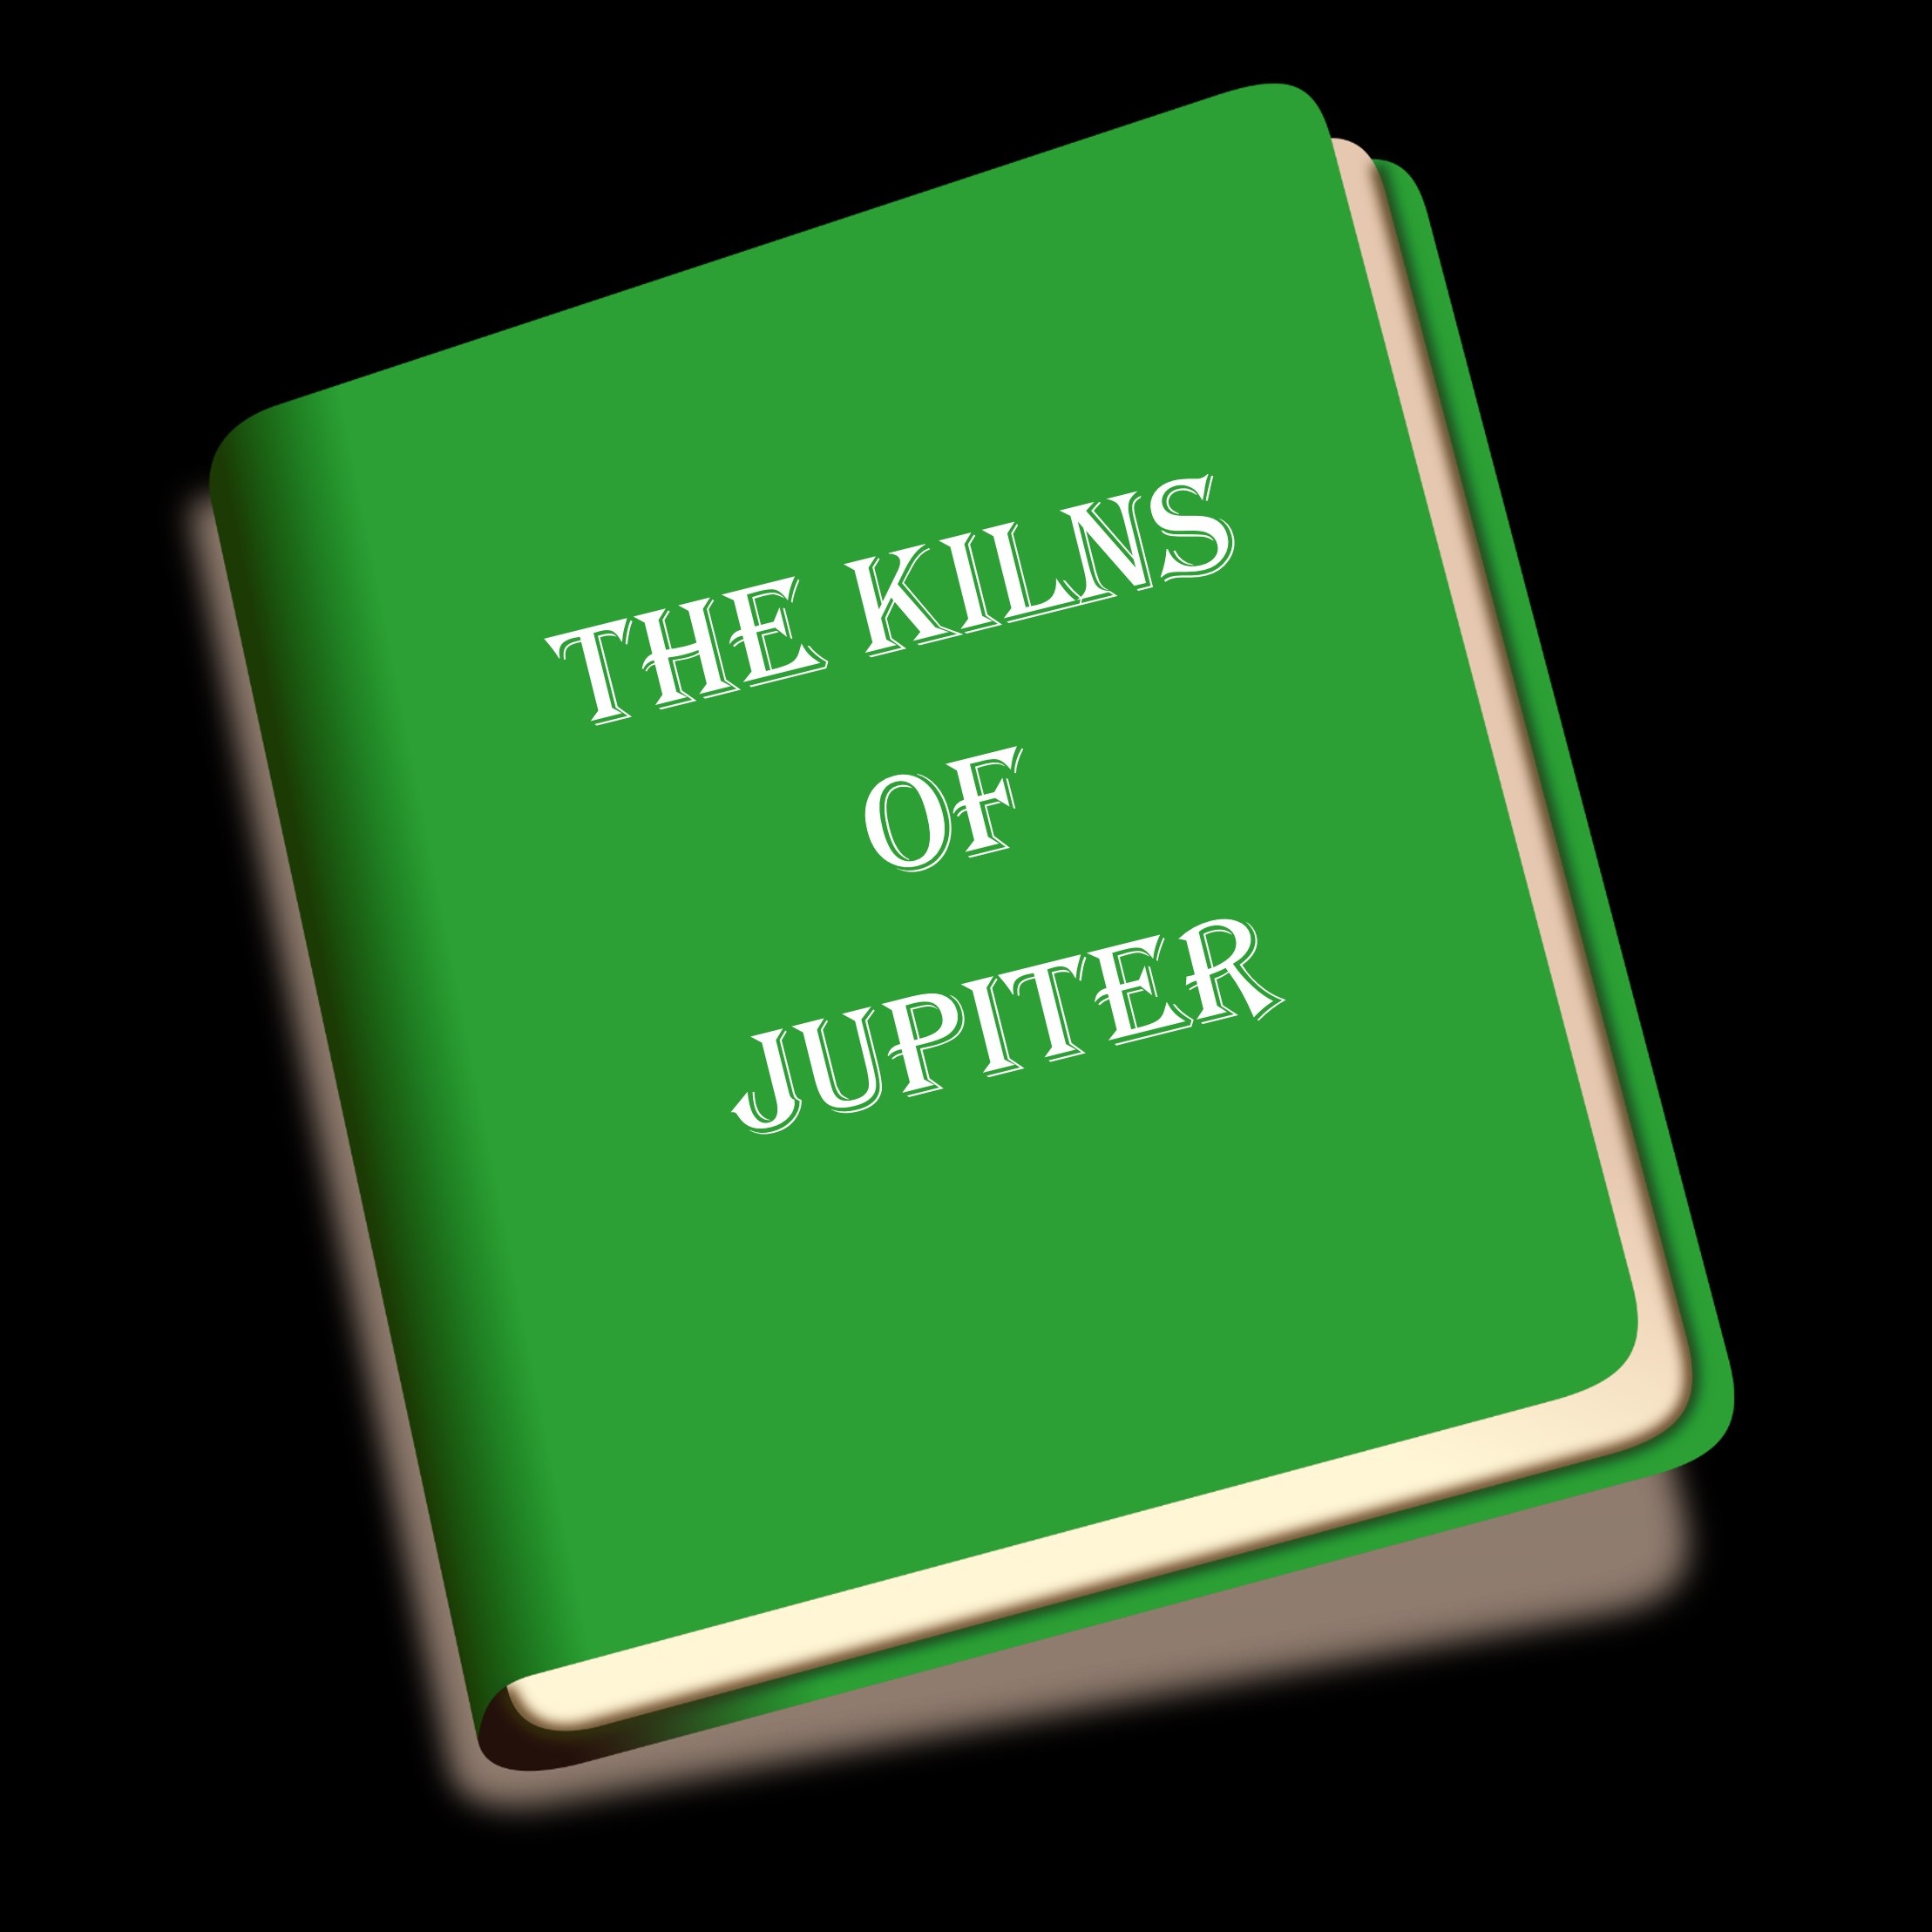 The Kilns of Jupiter placeholder